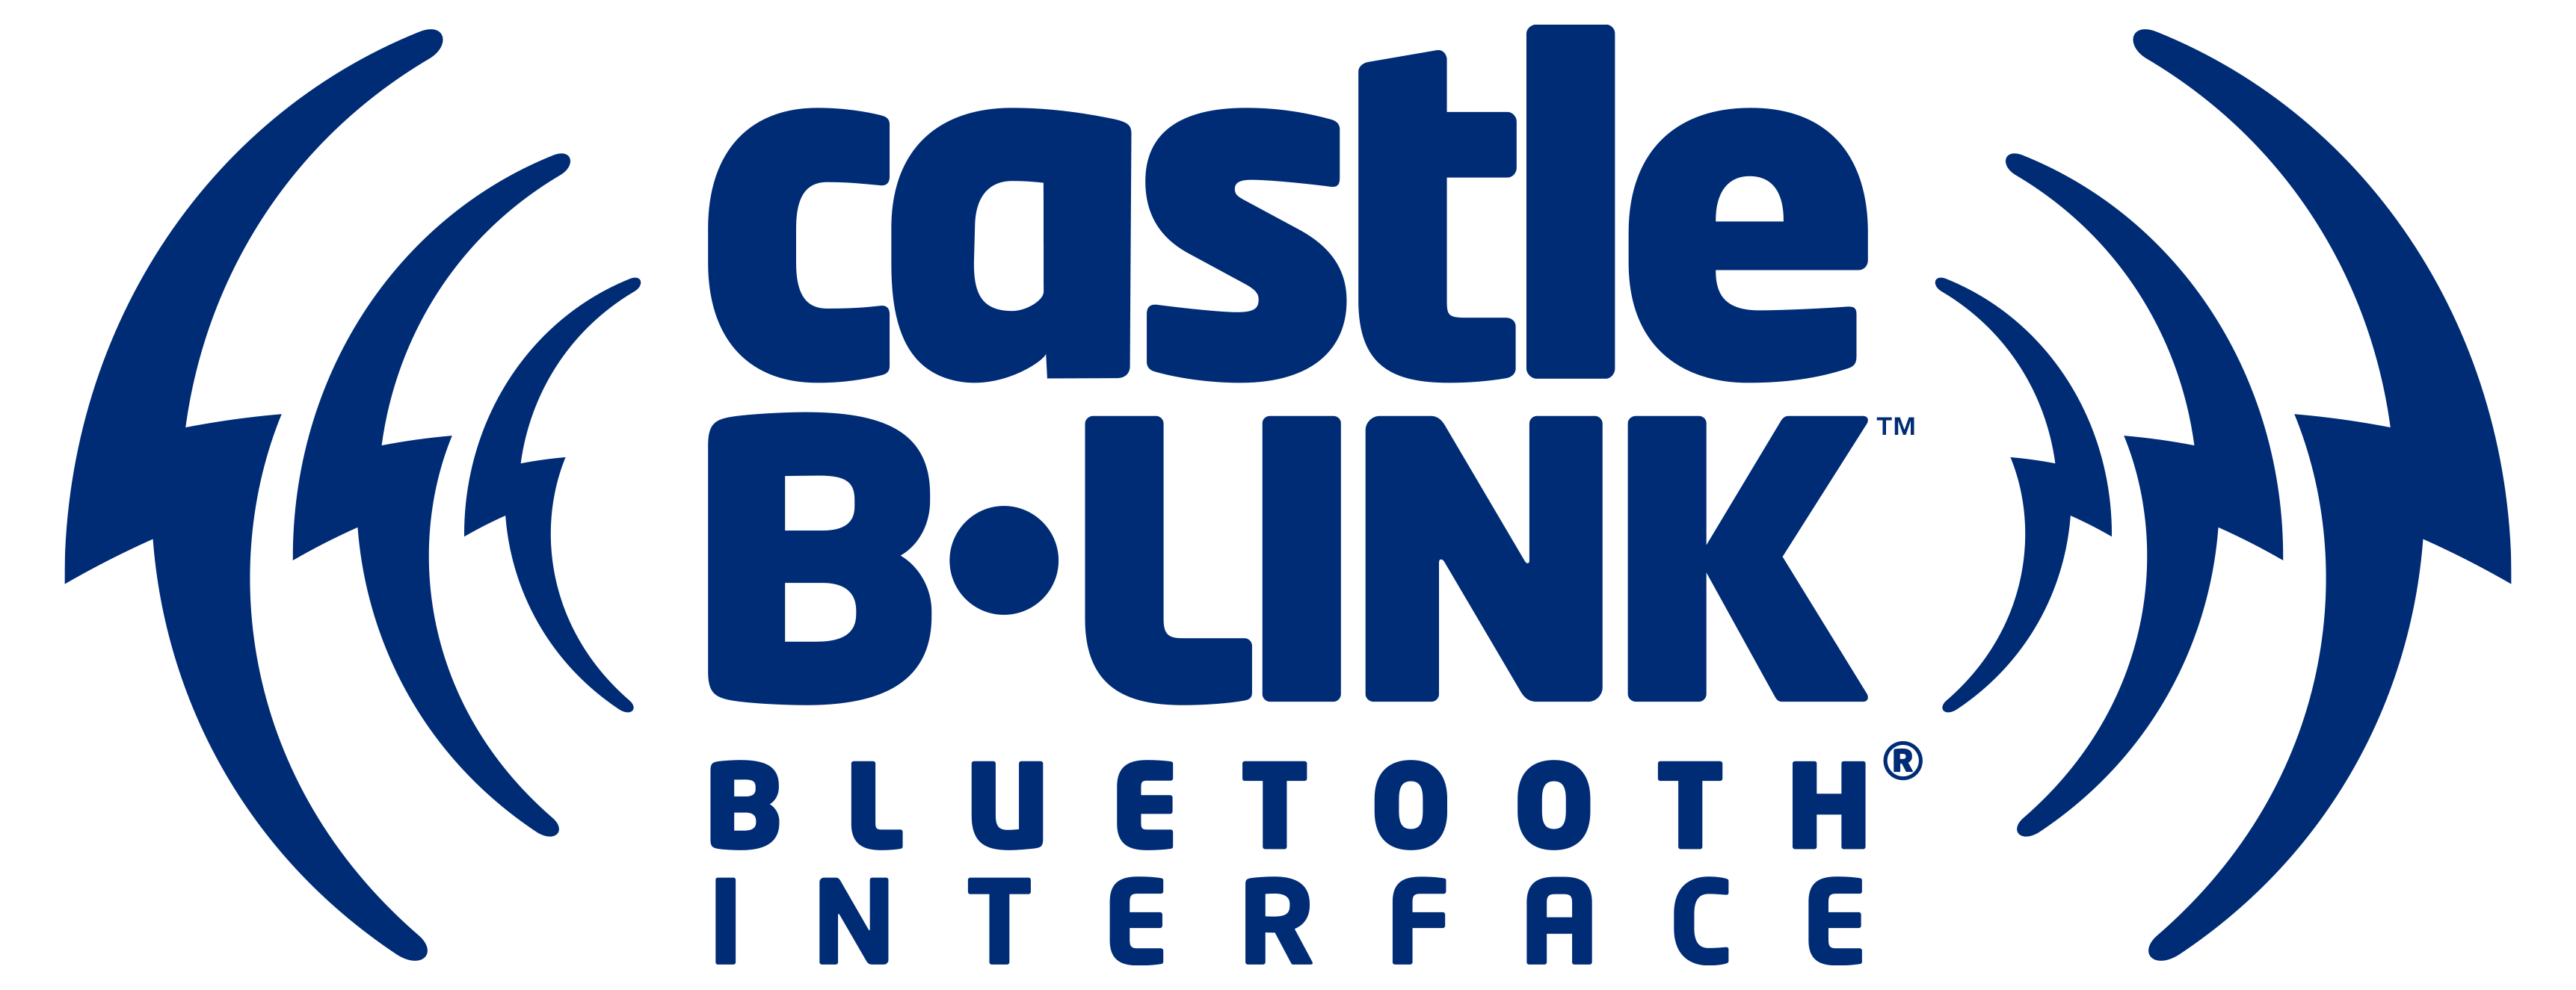 Castle-B-Link-Logo.png?fv=69B8F55D52741C